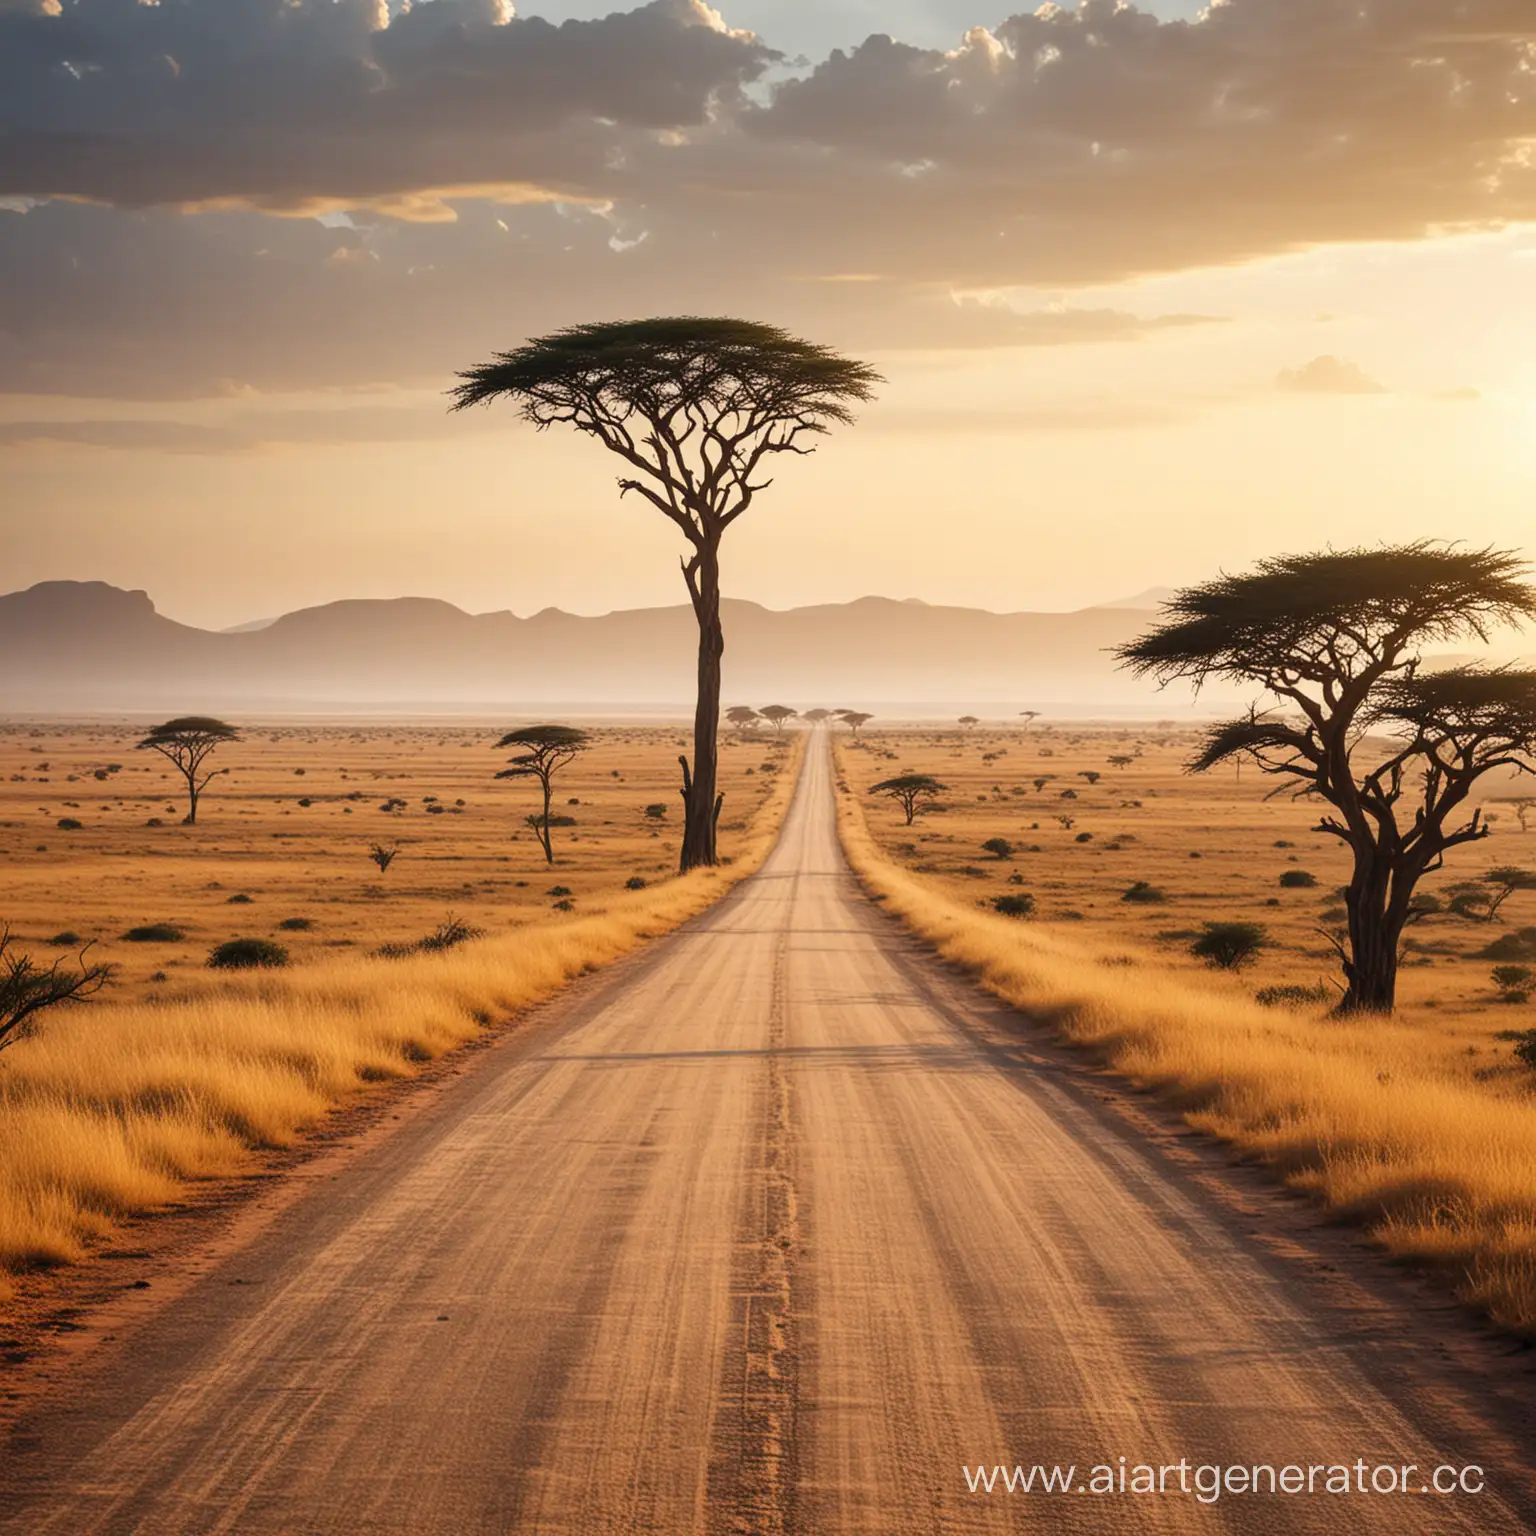 African-Savanna-Road-Journey-Adventure-through-Vast-Landscapes